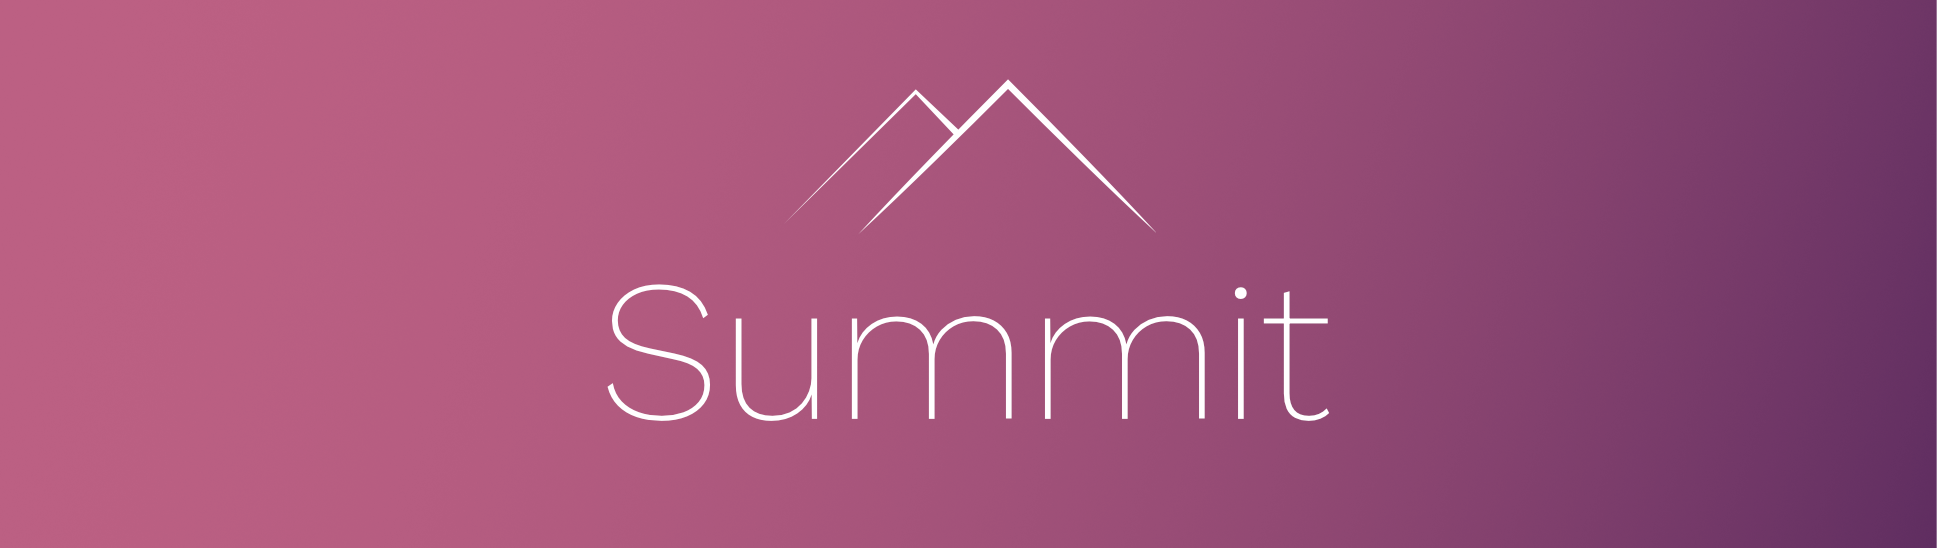 summit_banner